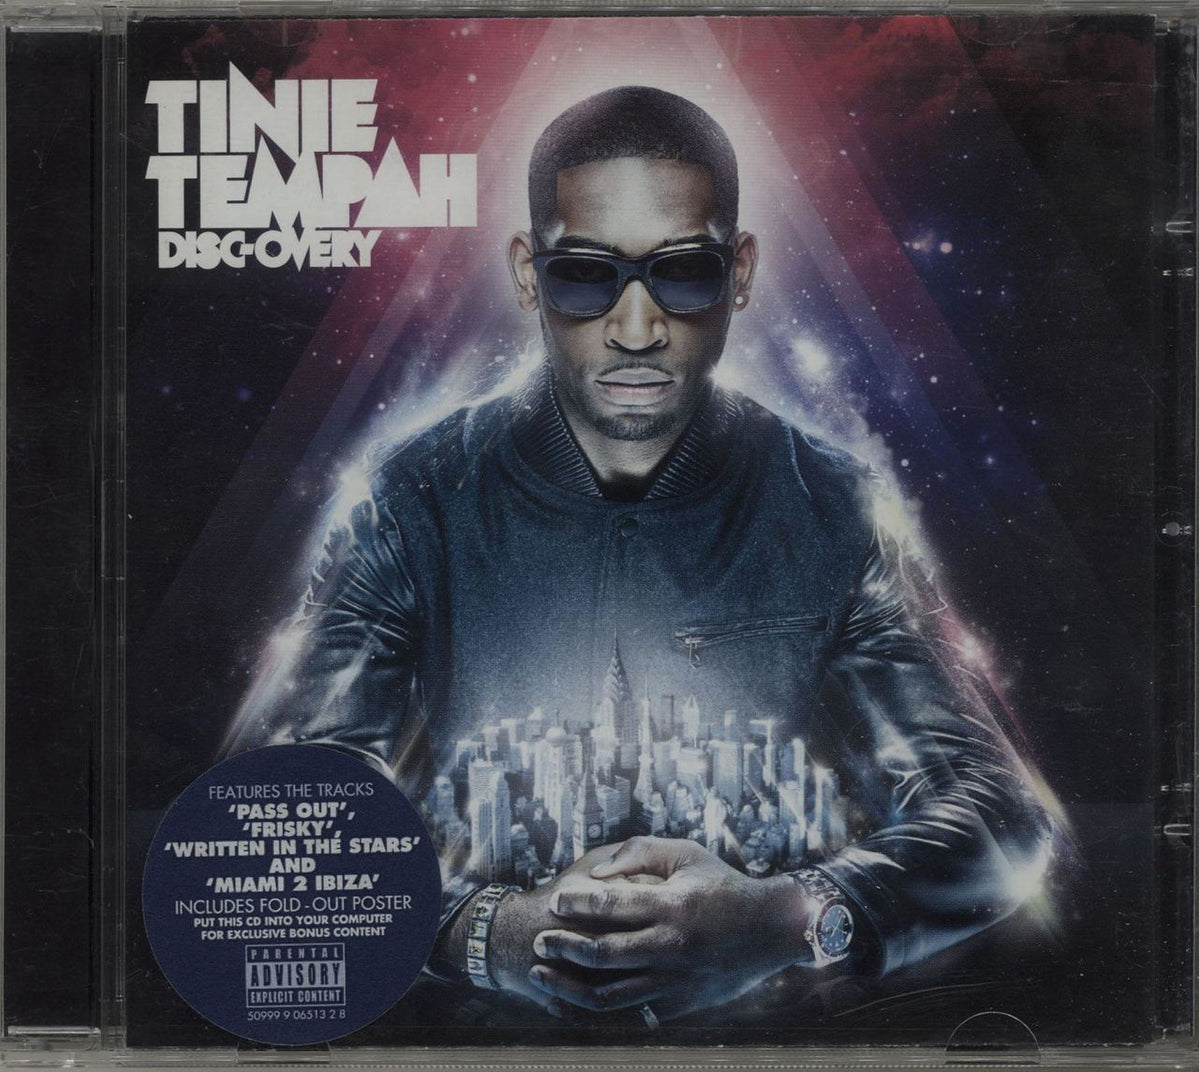 Tinie Tempah Disc-Overy UK CD album — RareVinyl.com